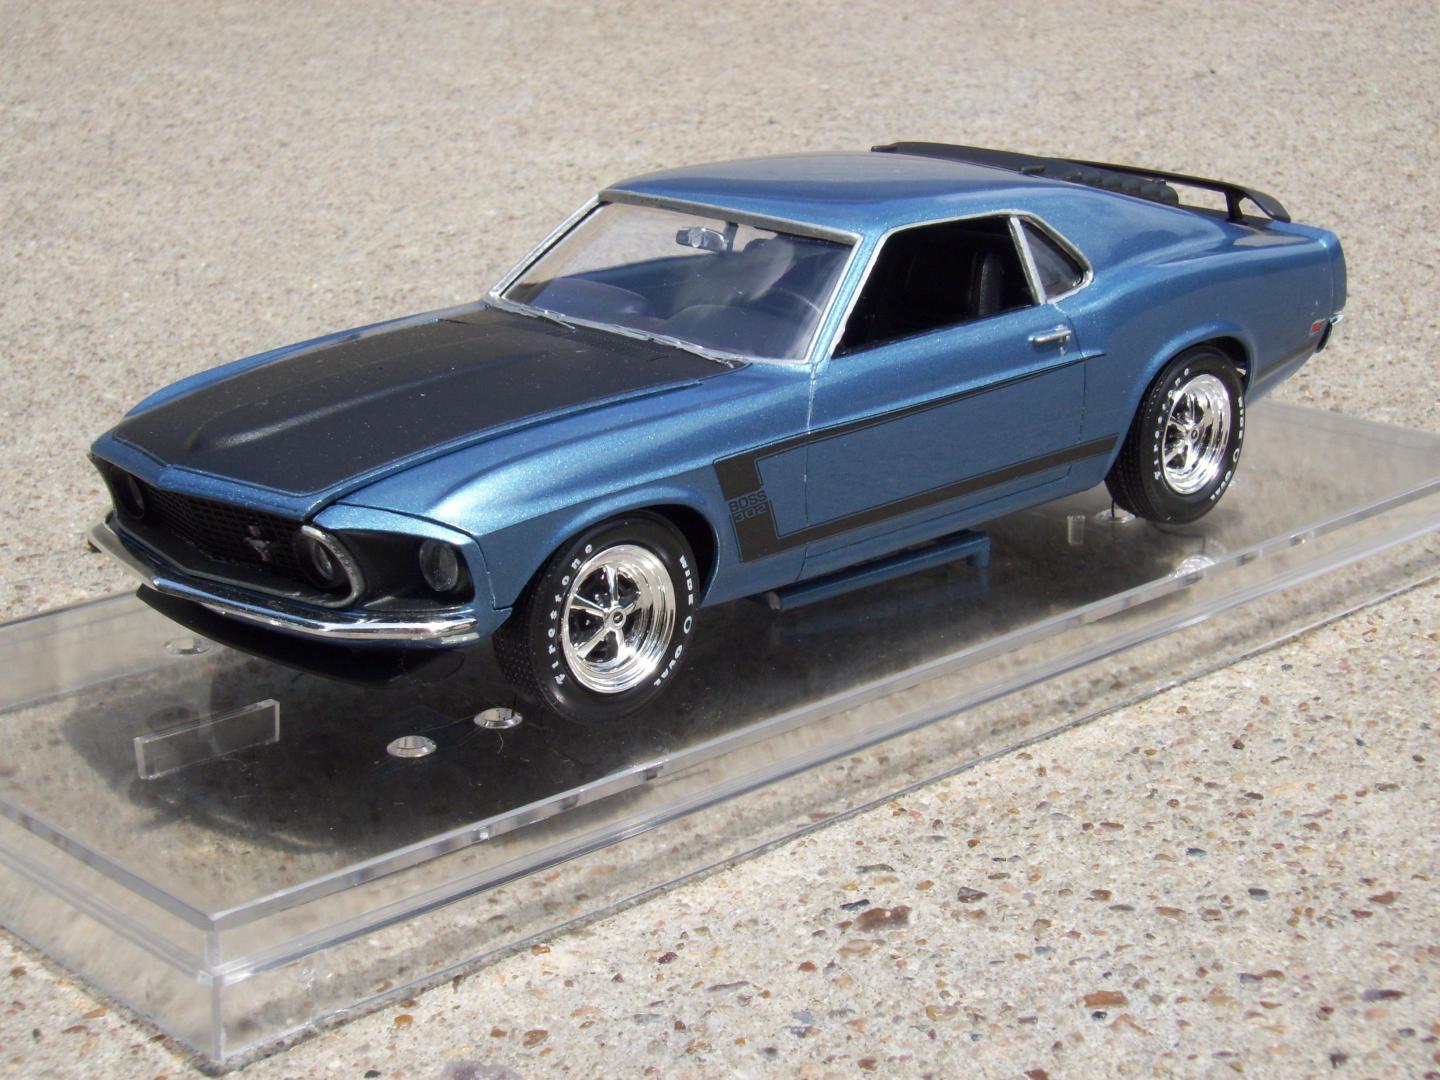 1969 Mustang Boss 302 - Model Cars - Model Cars Magazine Forum